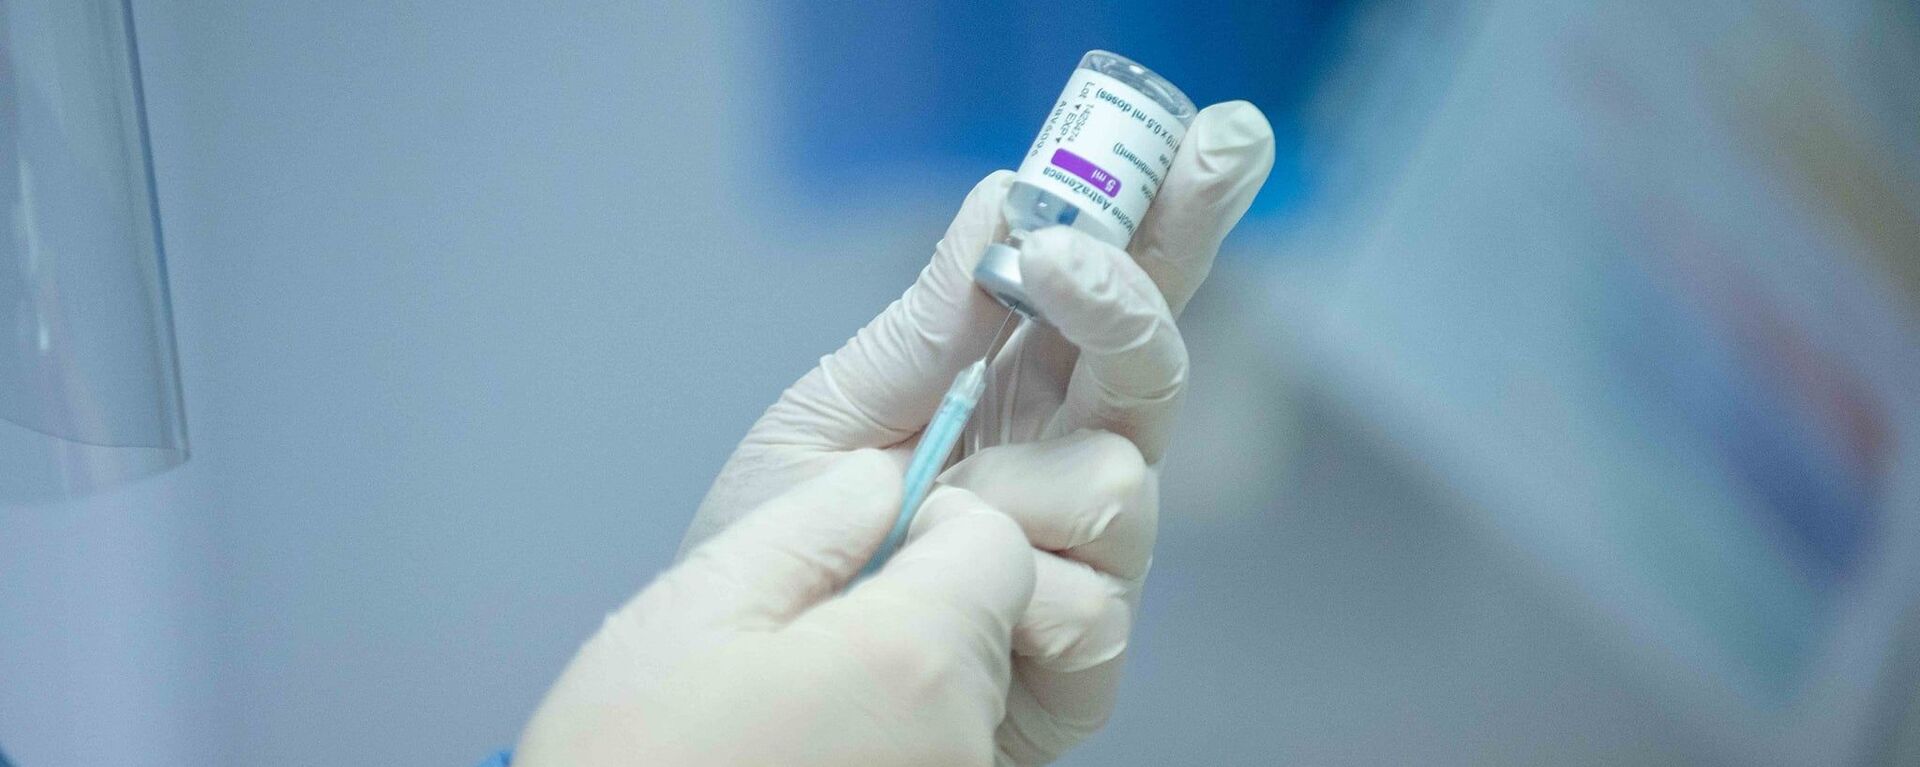 В Молдове стартовала вакцинация врачей от коронавируса - Sputnik Молдова, 1920, 15.03.2021